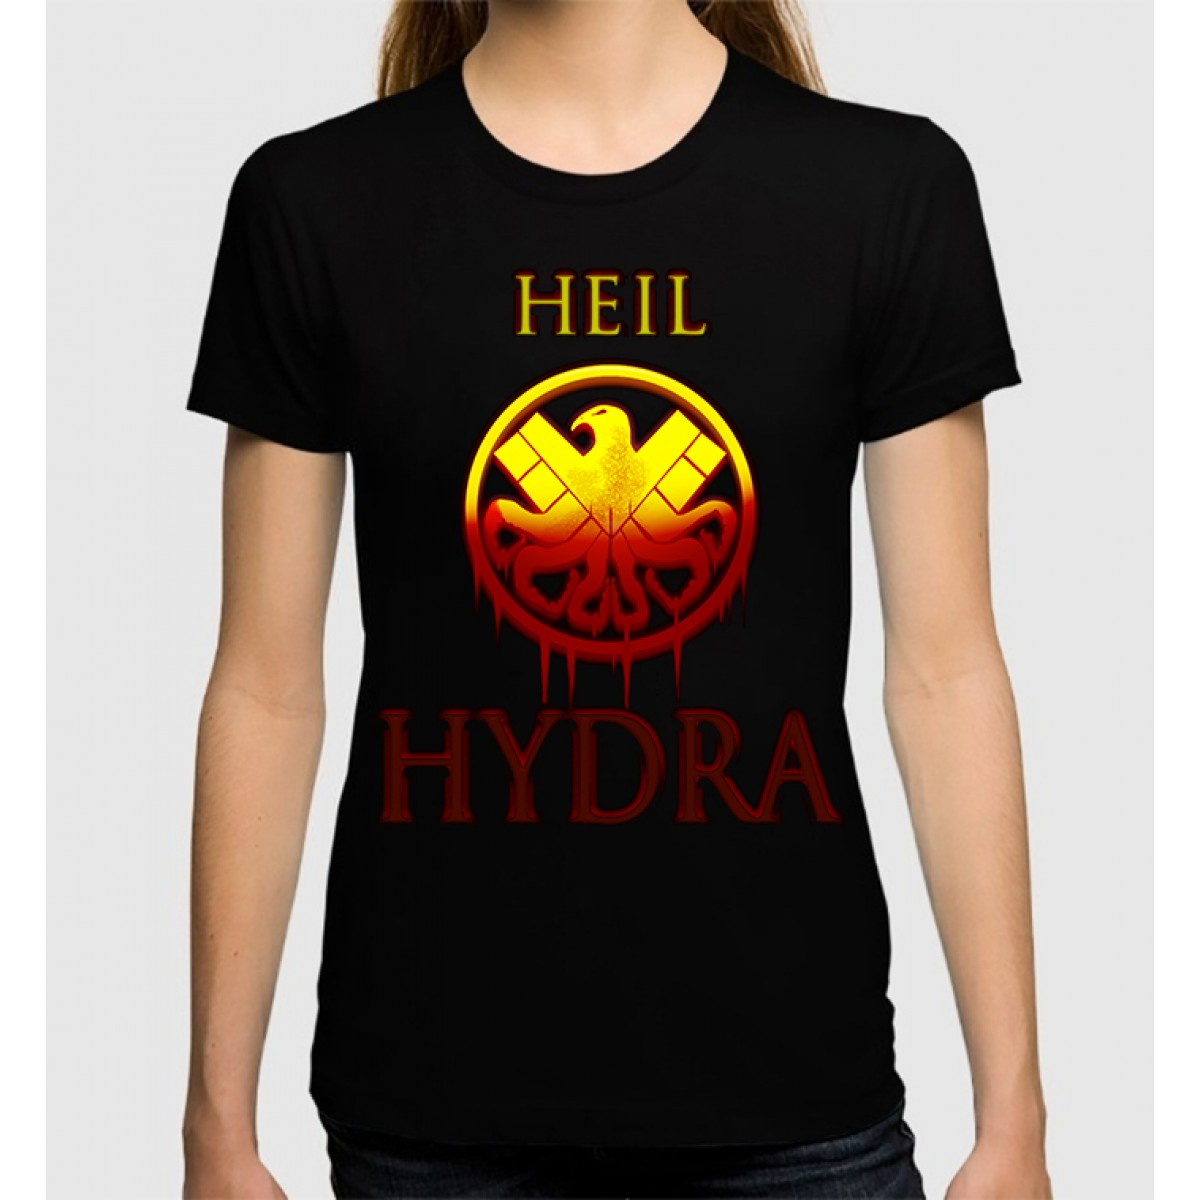 Купить футболка hydra 1 грамм марихуаны это